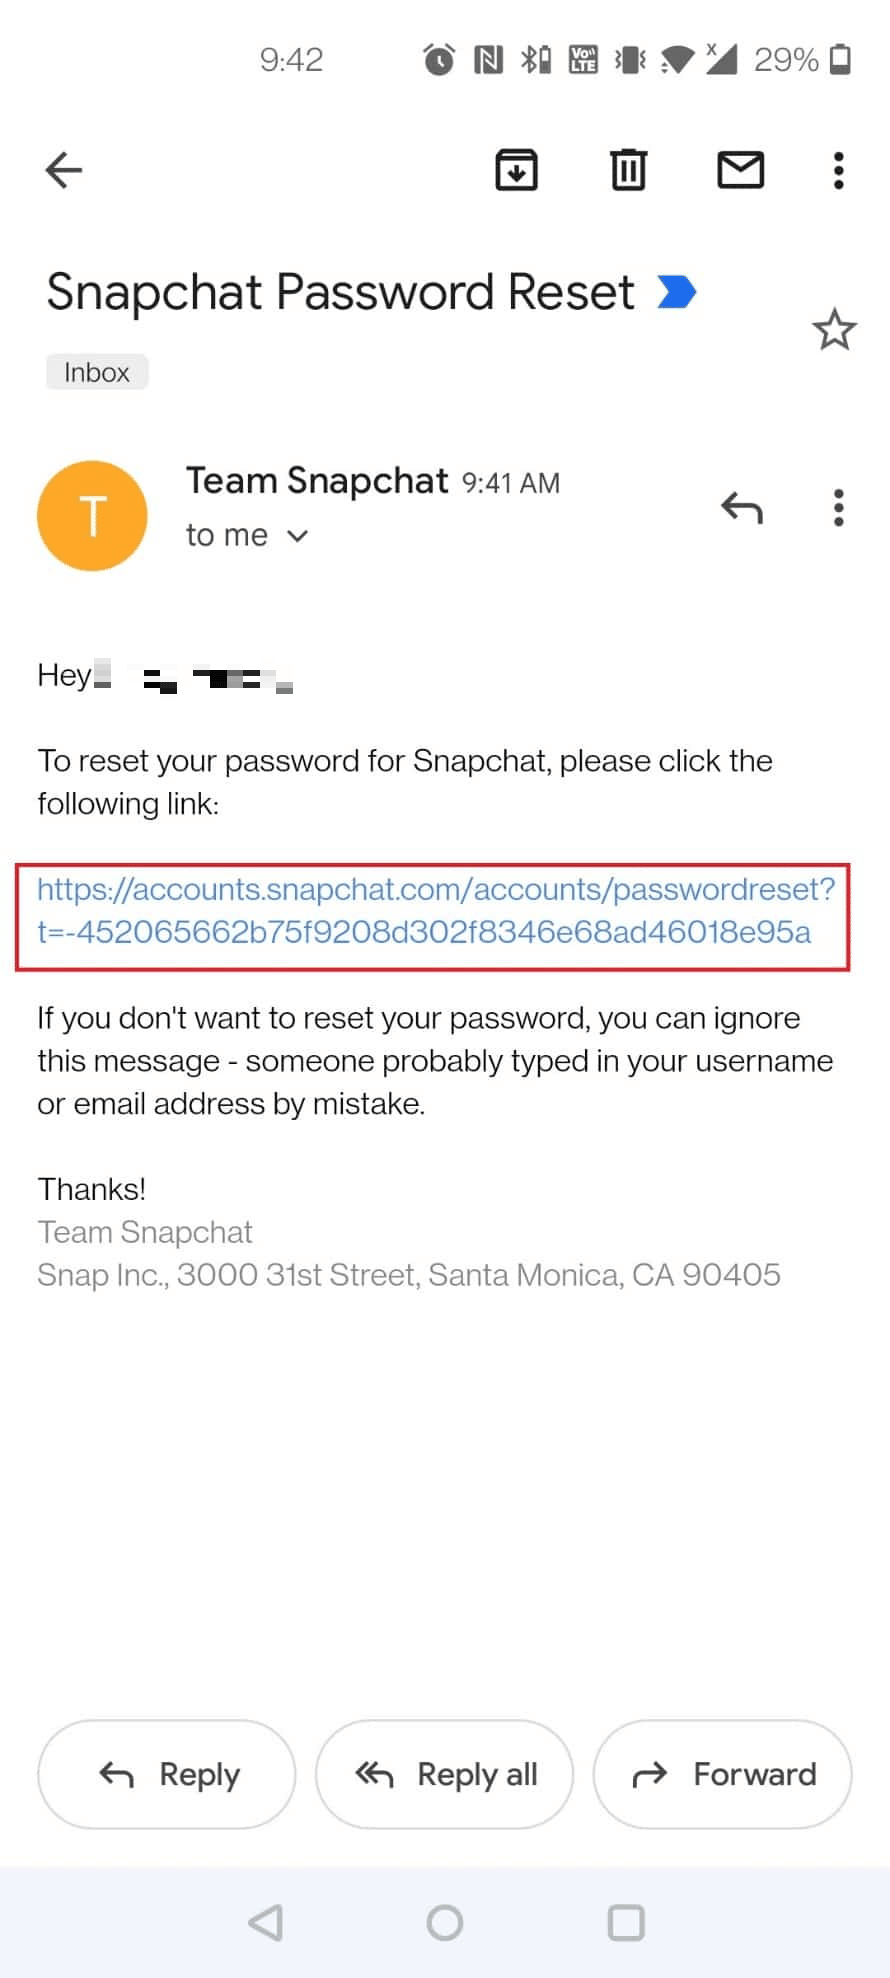 Tippen Sie in Ihrem Posteingang auf die erhaltene E-Mail zum Zurücksetzen des Snapchat-Passworts – Link zum Zurücksetzen